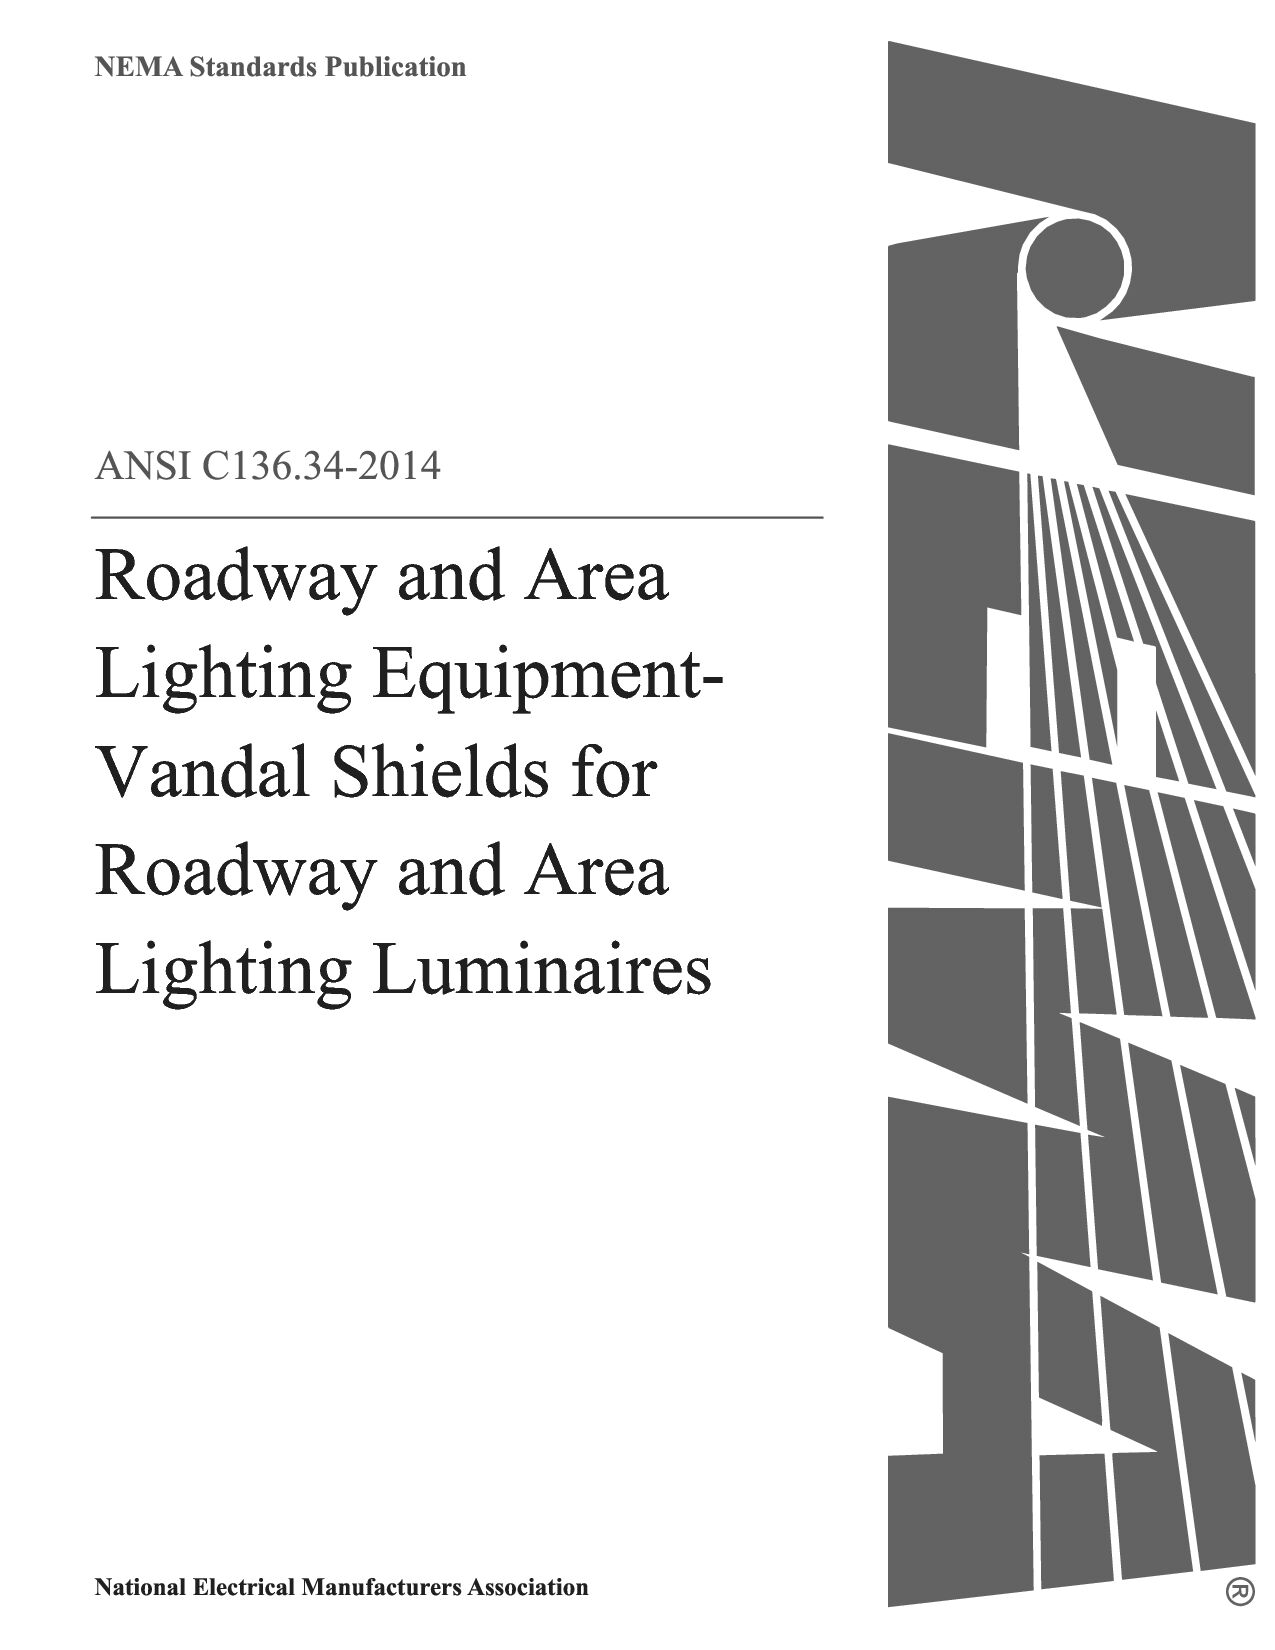 ANSI C136.34-2014